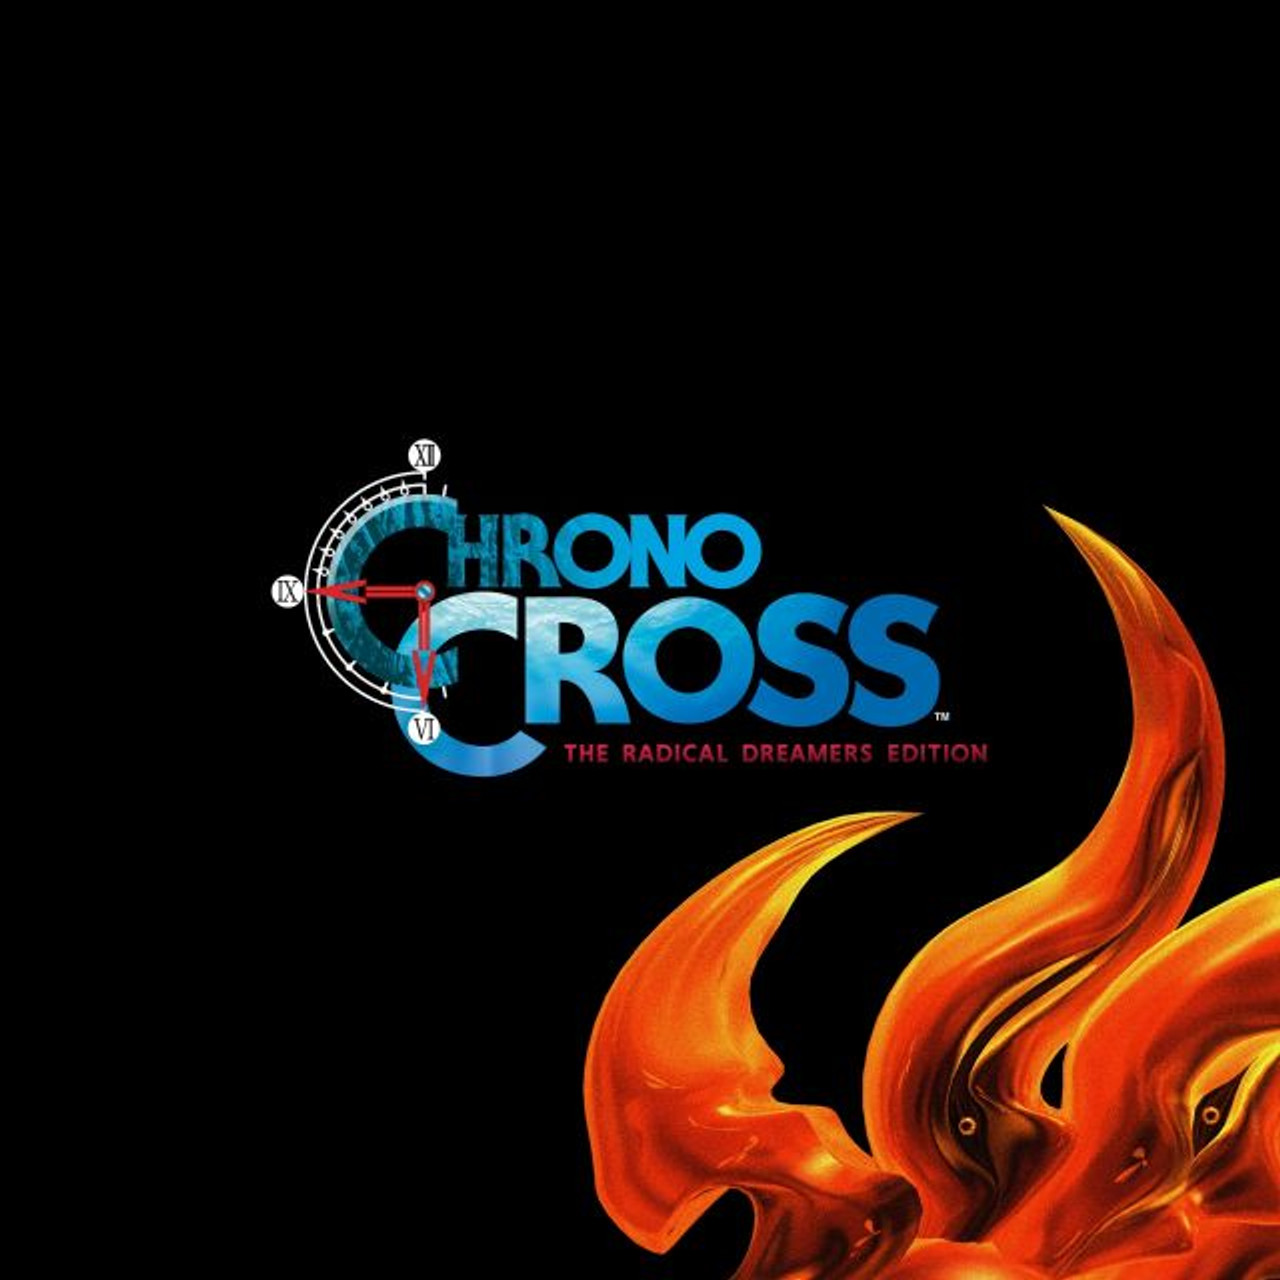 Análise: Chrono Cross: The Radical Dreamers Edition (Switch) é o